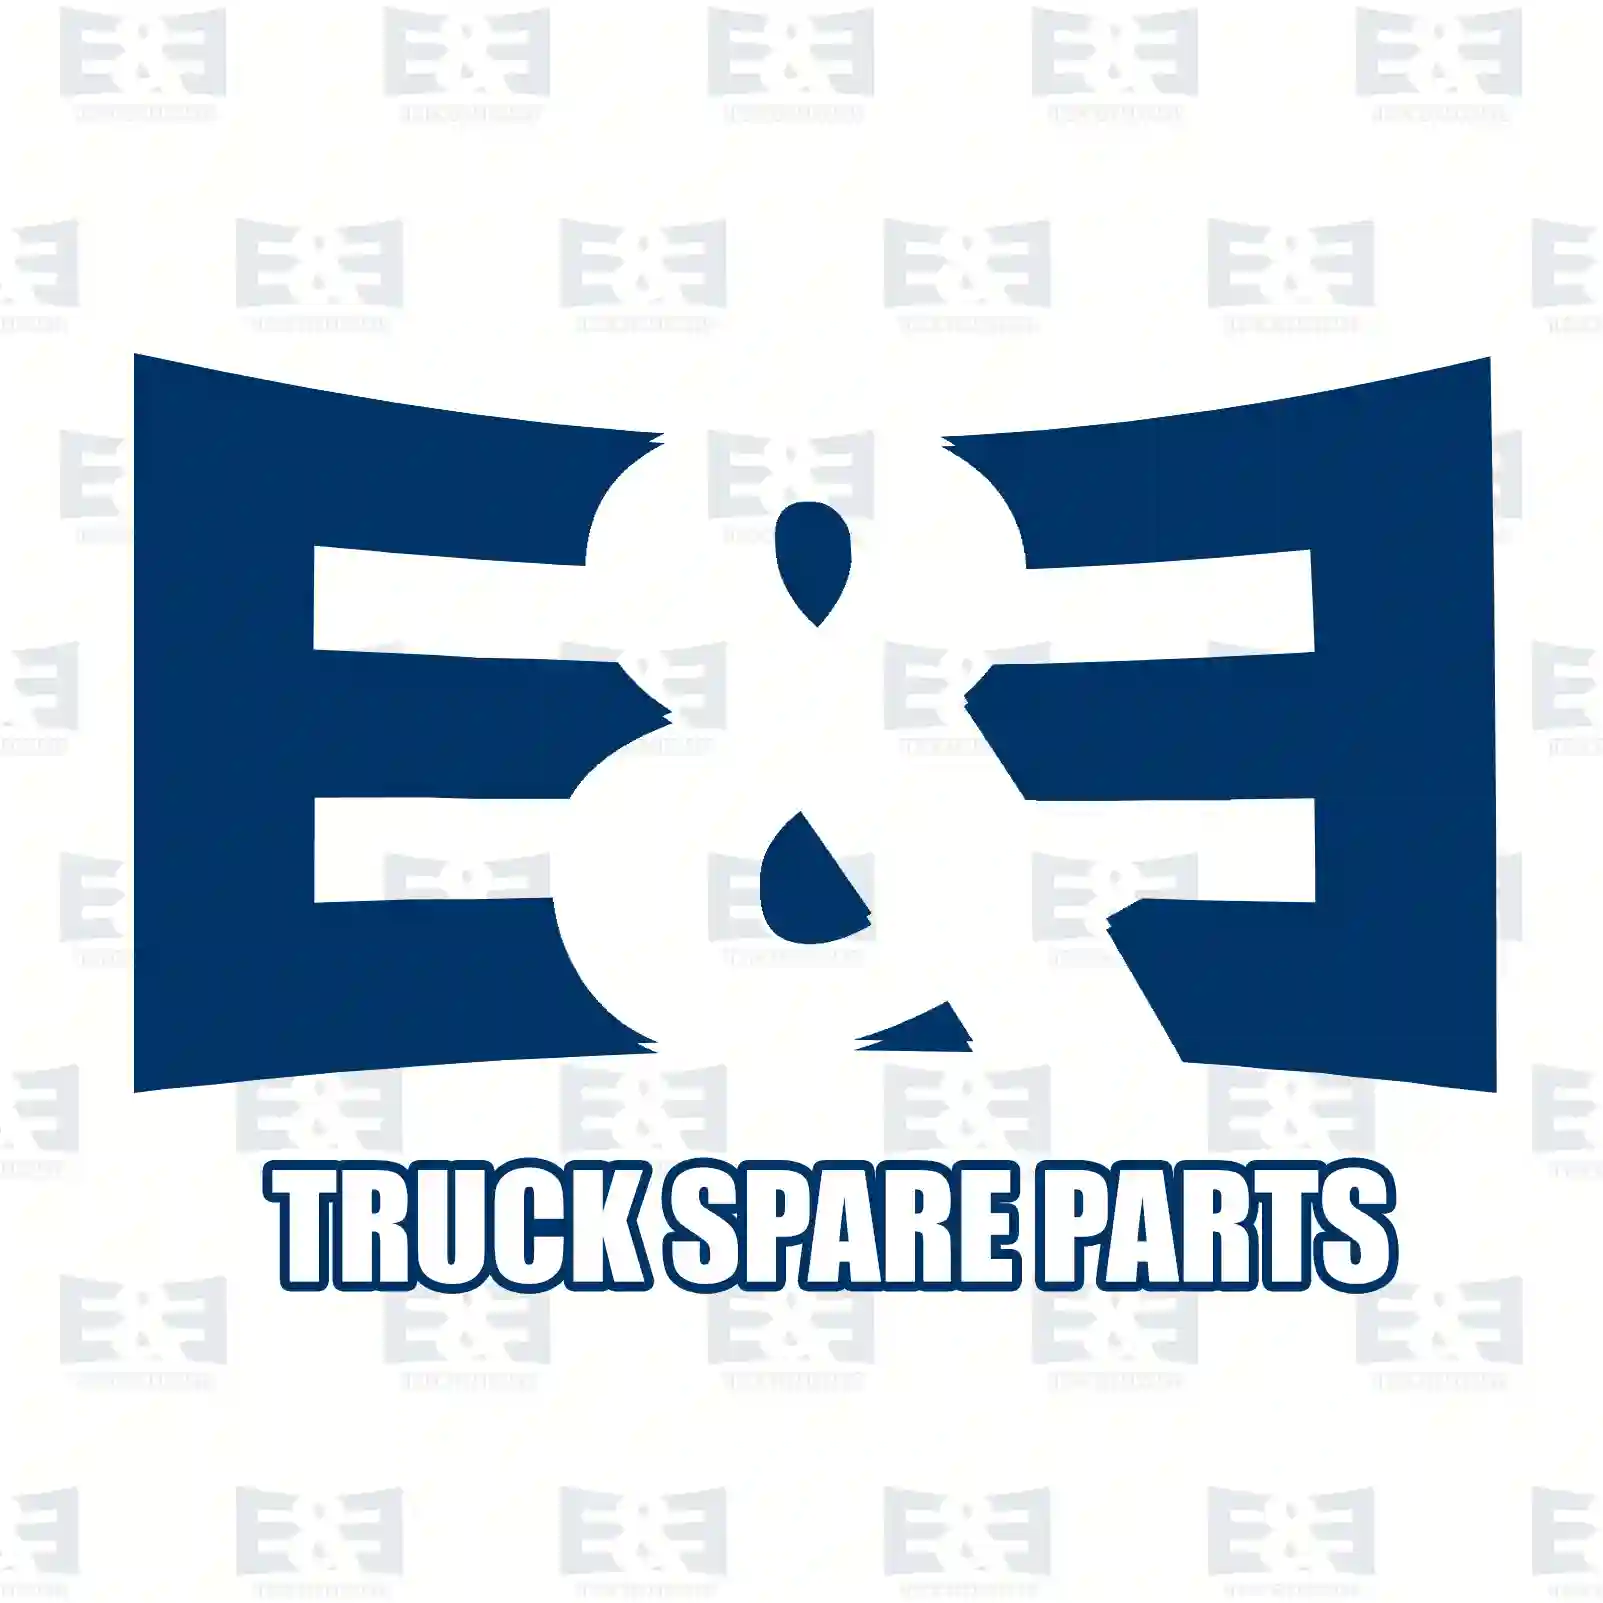 Brake disc, 2E2293924, 01904692, 1904692, , , , , , , , ||  2E2293924 E&E Truck Spare Parts | Truck Spare Parts, Auotomotive Spare Parts Brake disc, 2E2293924, 01904692, 1904692, , , , , , , , ||  2E2293924 E&E Truck Spare Parts | Truck Spare Parts, Auotomotive Spare Parts